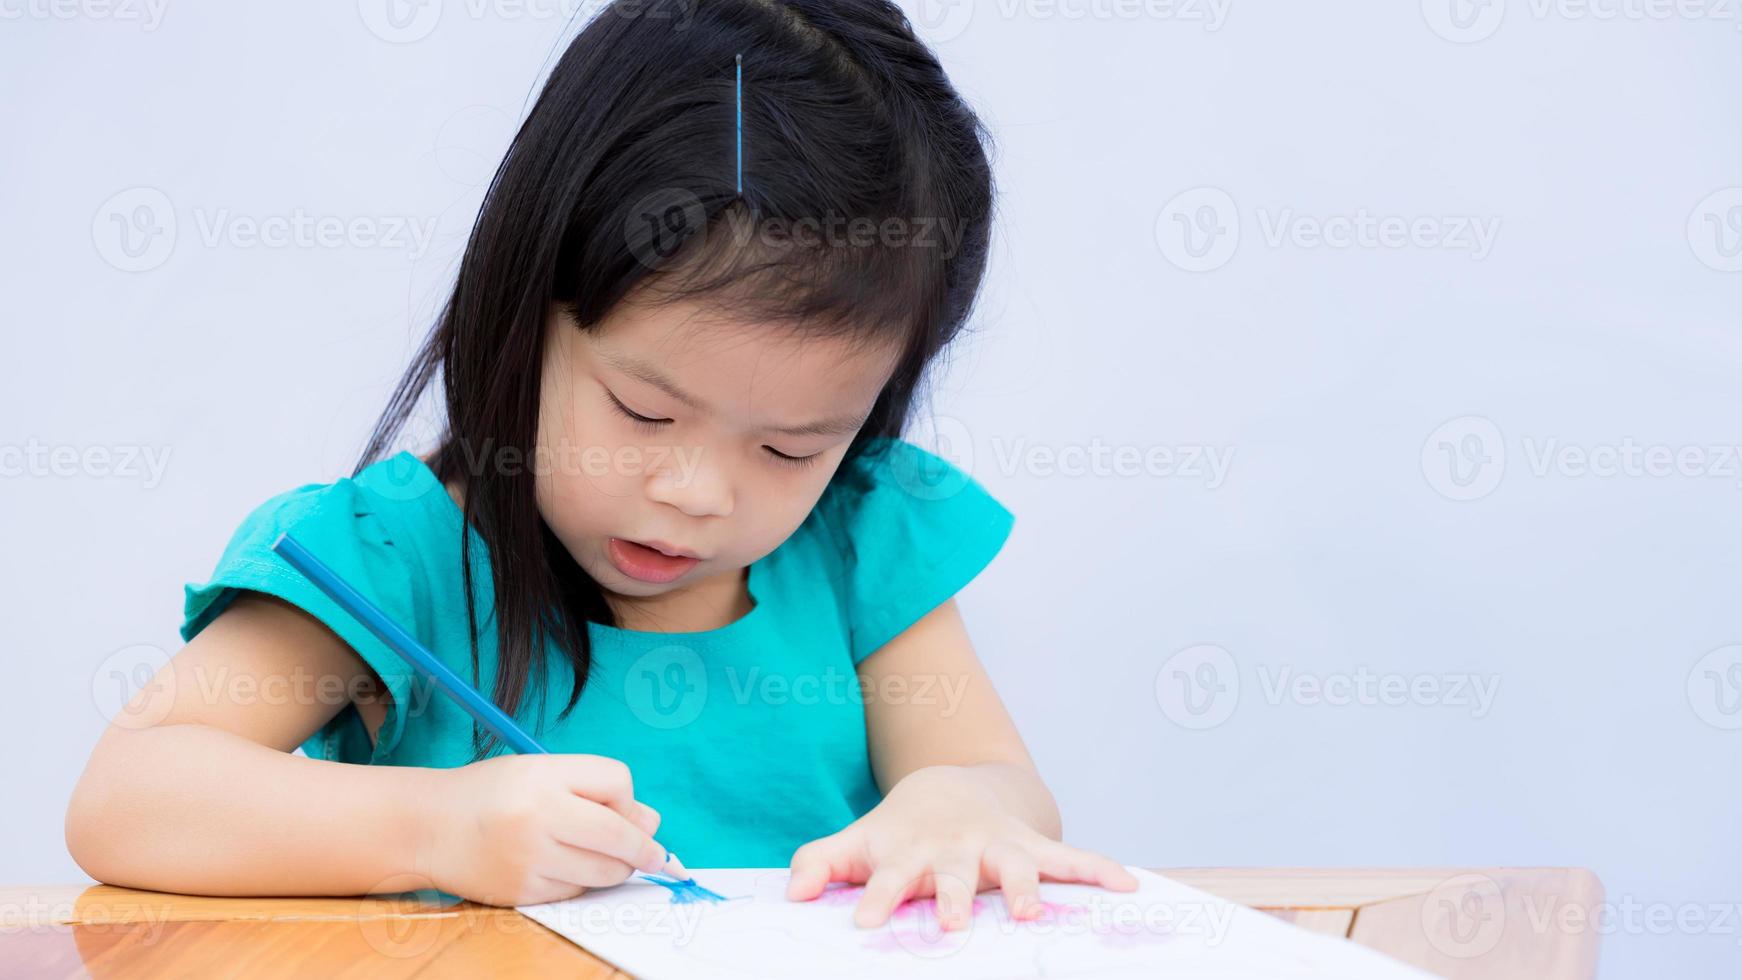 bambino felice con la sua opera d'arte immaginaria. bambini che disegnano arte e colorano il legno. ragazza carina che tiene una matita colorata blu con la mano destra. bambino sta disegnando su carta su un tavolo di legno marrone. 3-4 anni. foto